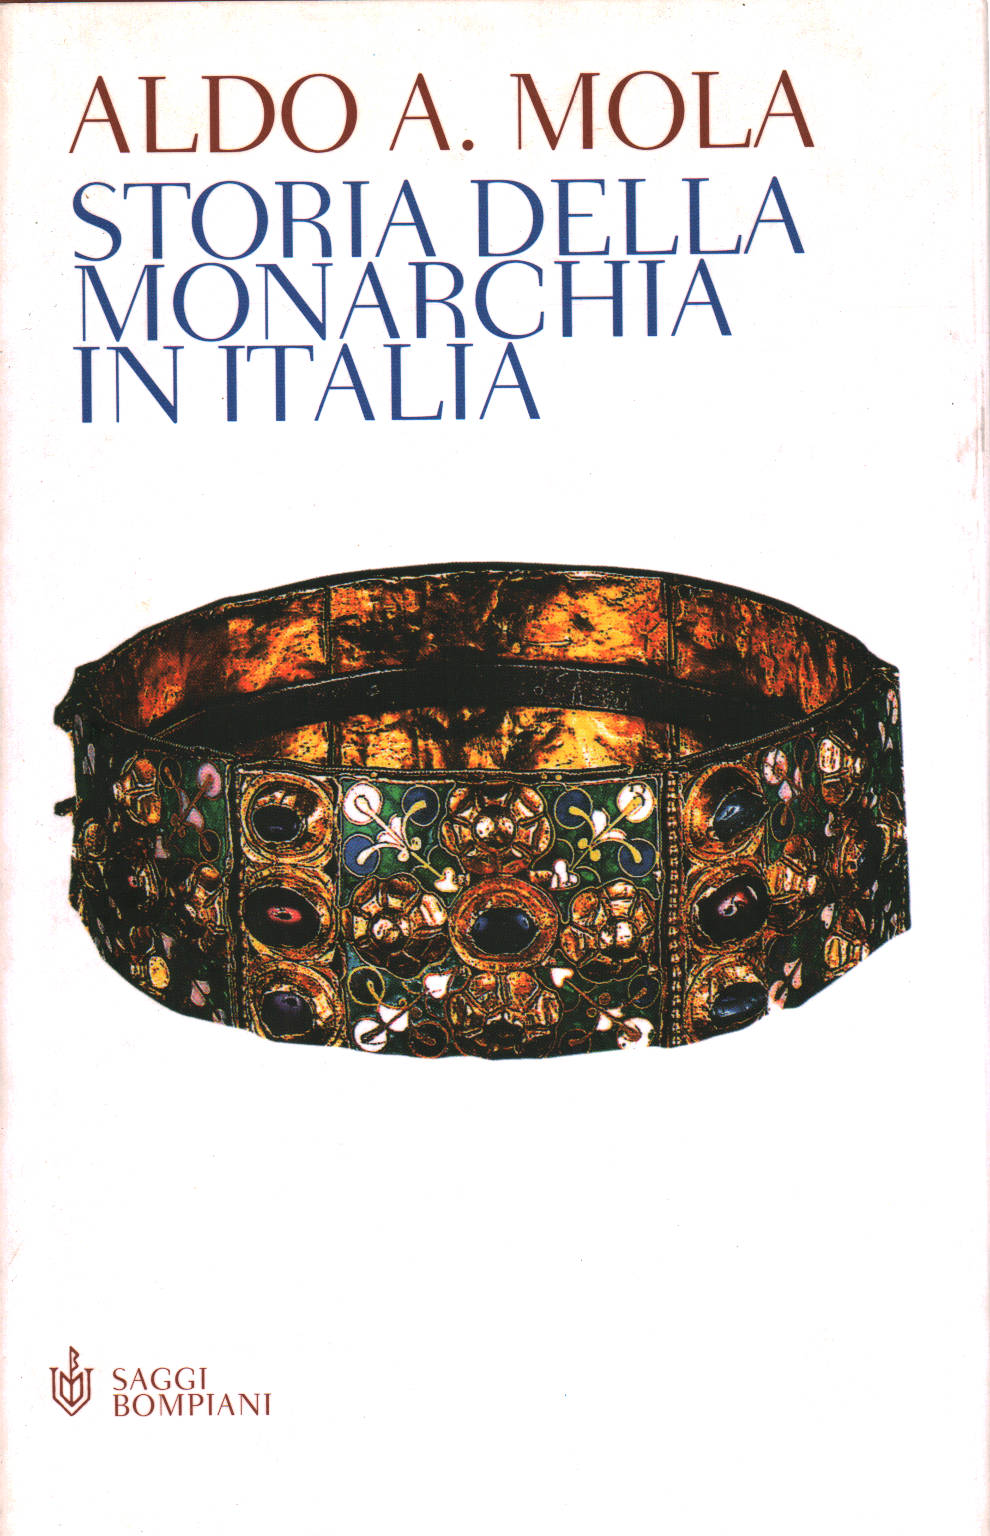 Historia de la monarquía en Italia, Aldo A. Mola